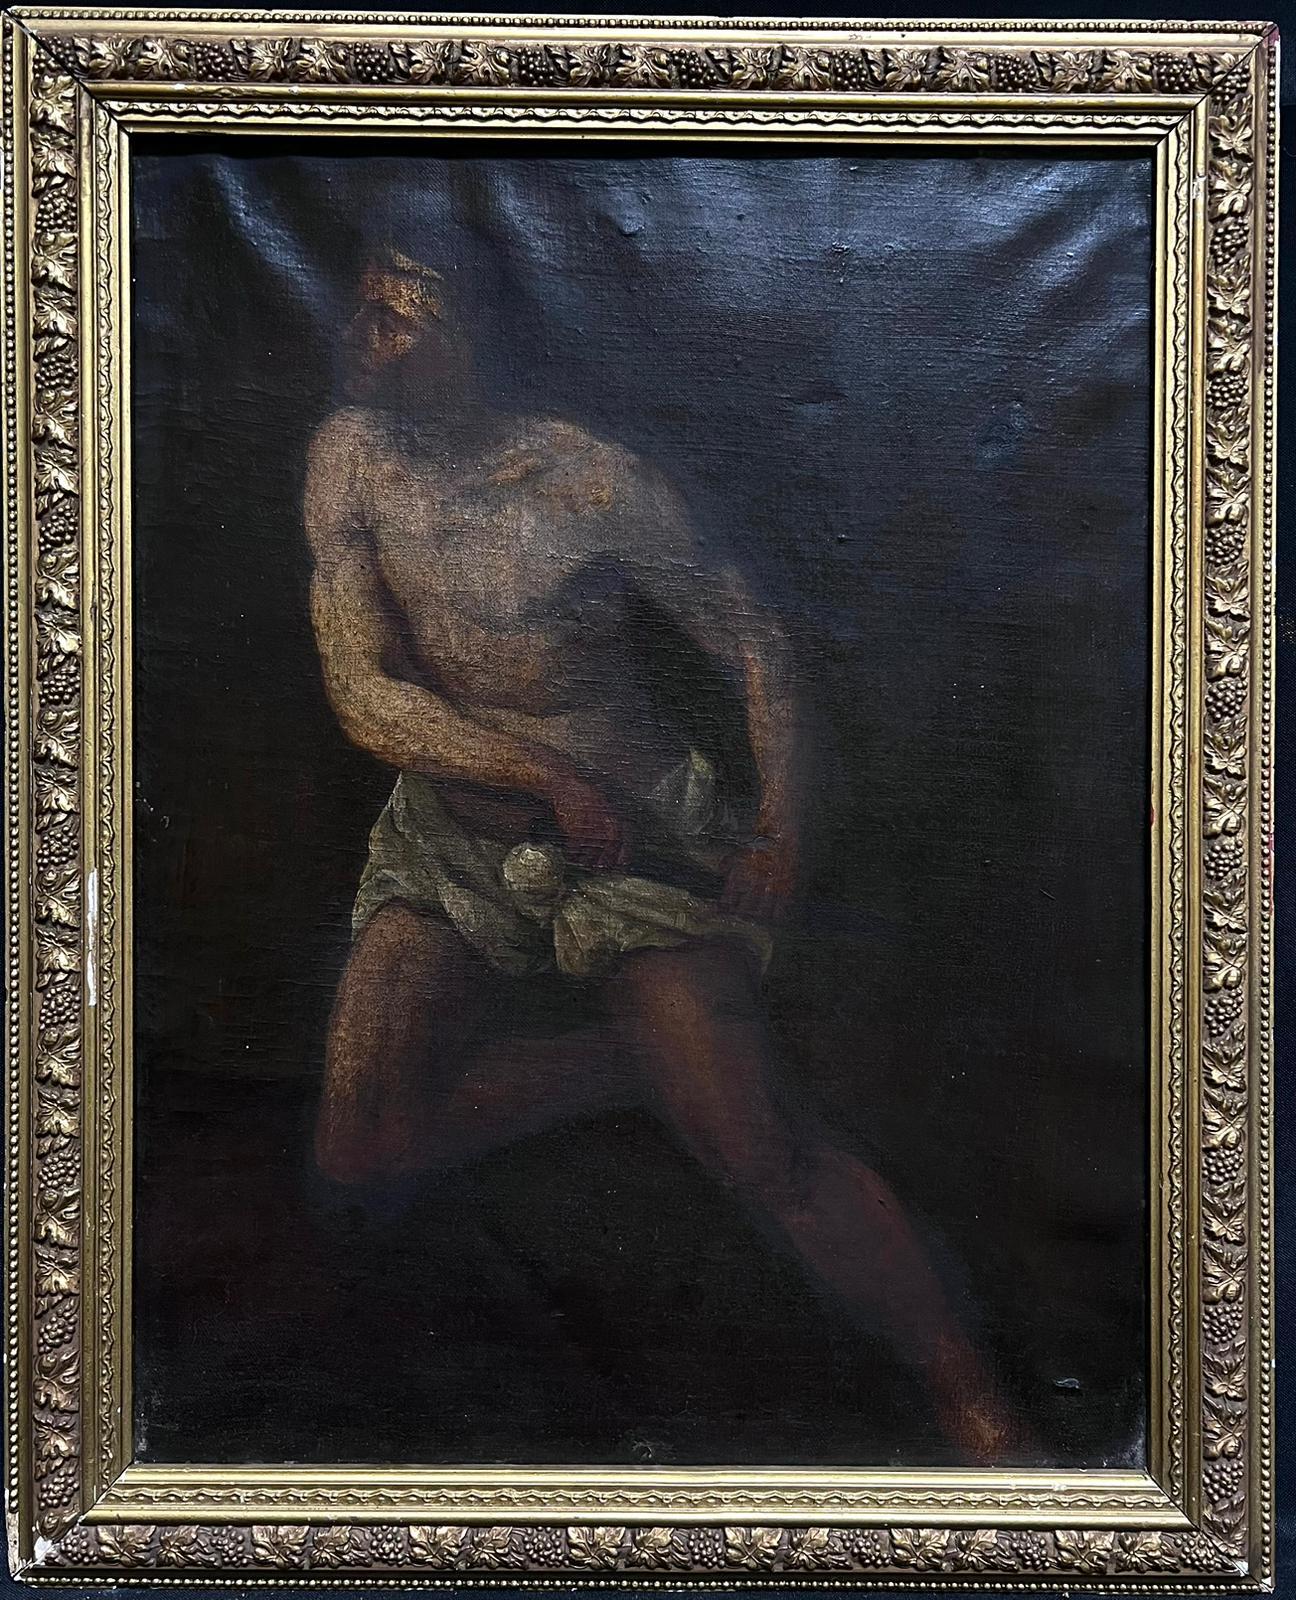 Début du 17e siècle, peinture à l'huile de l'ancien Masterly, homme semi-nu avec poignard